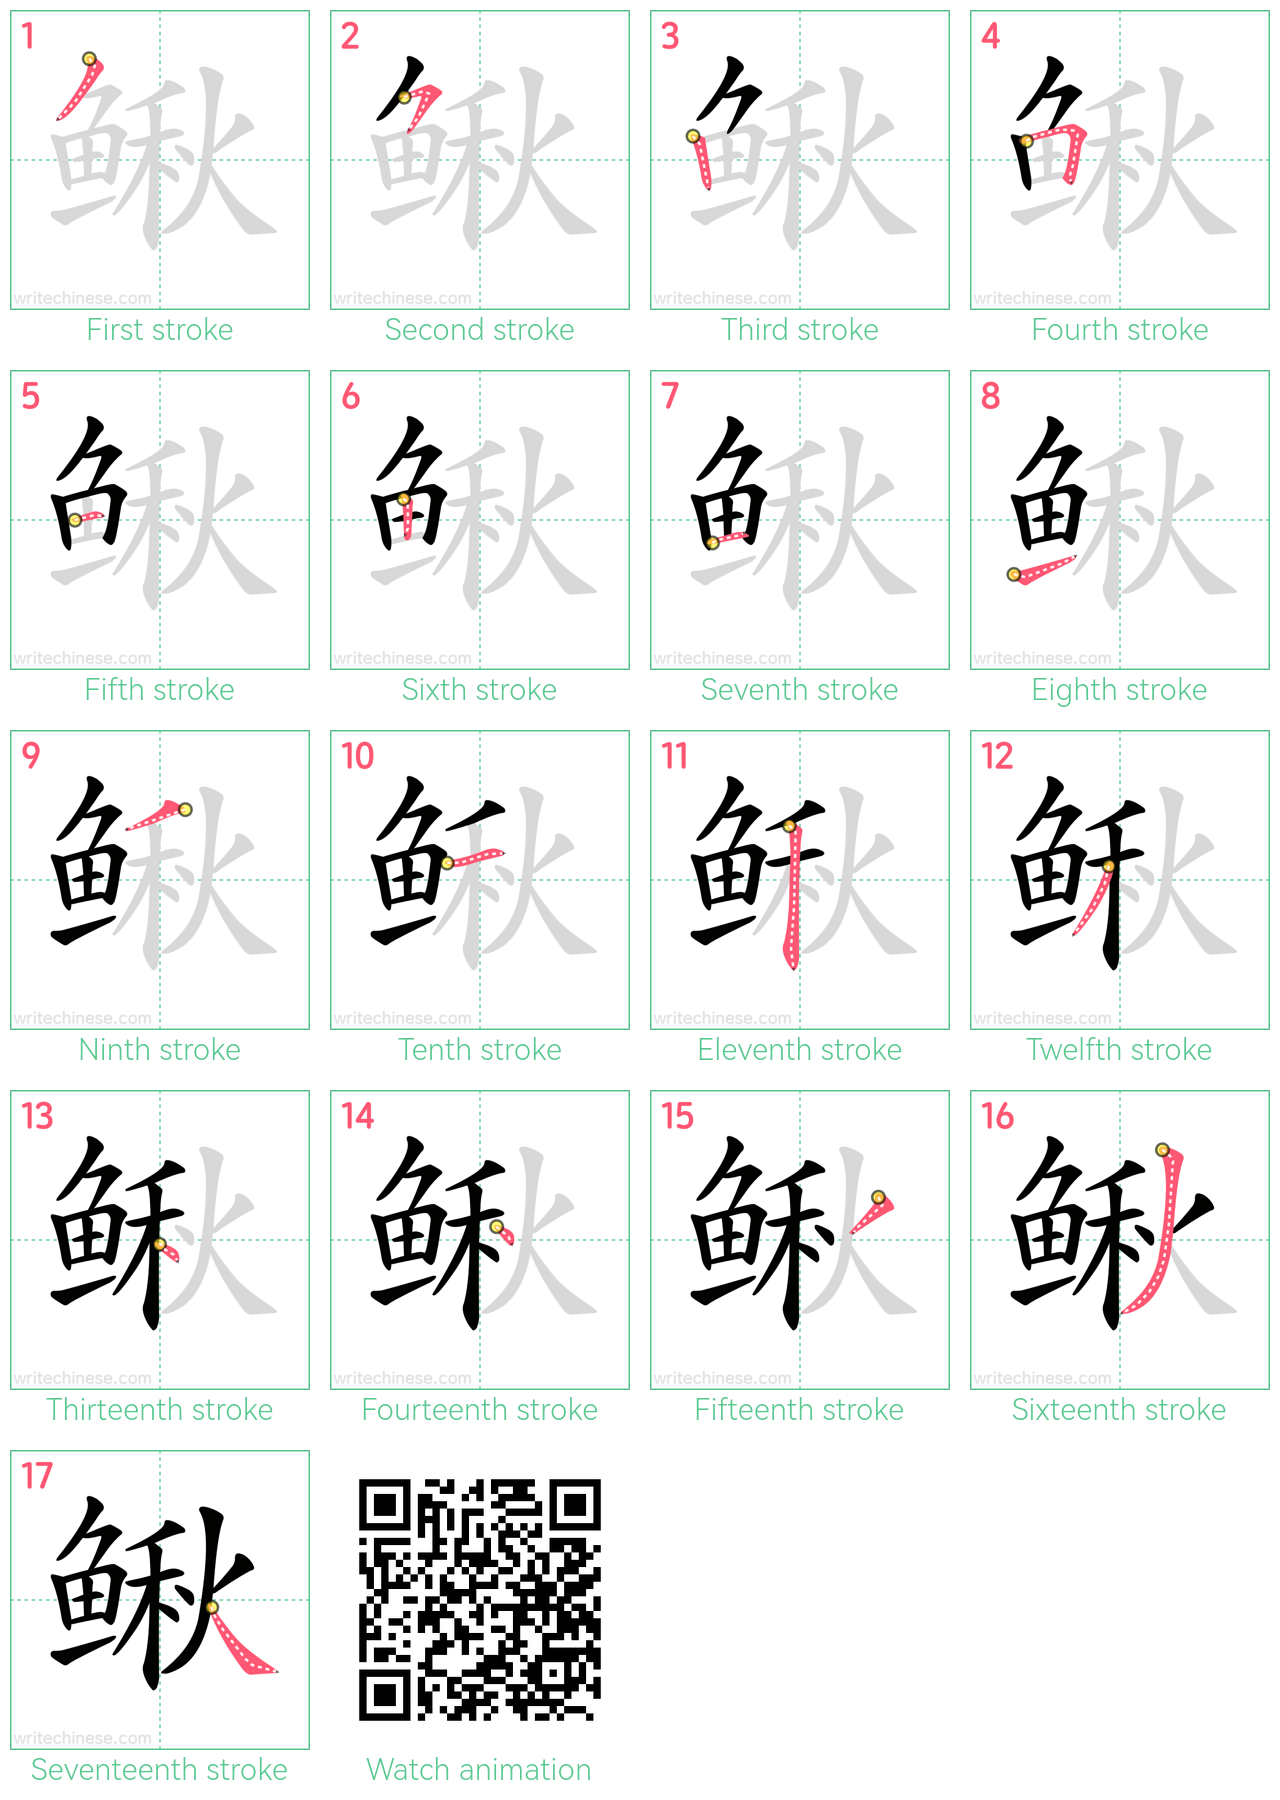 鳅 step-by-step stroke order diagrams